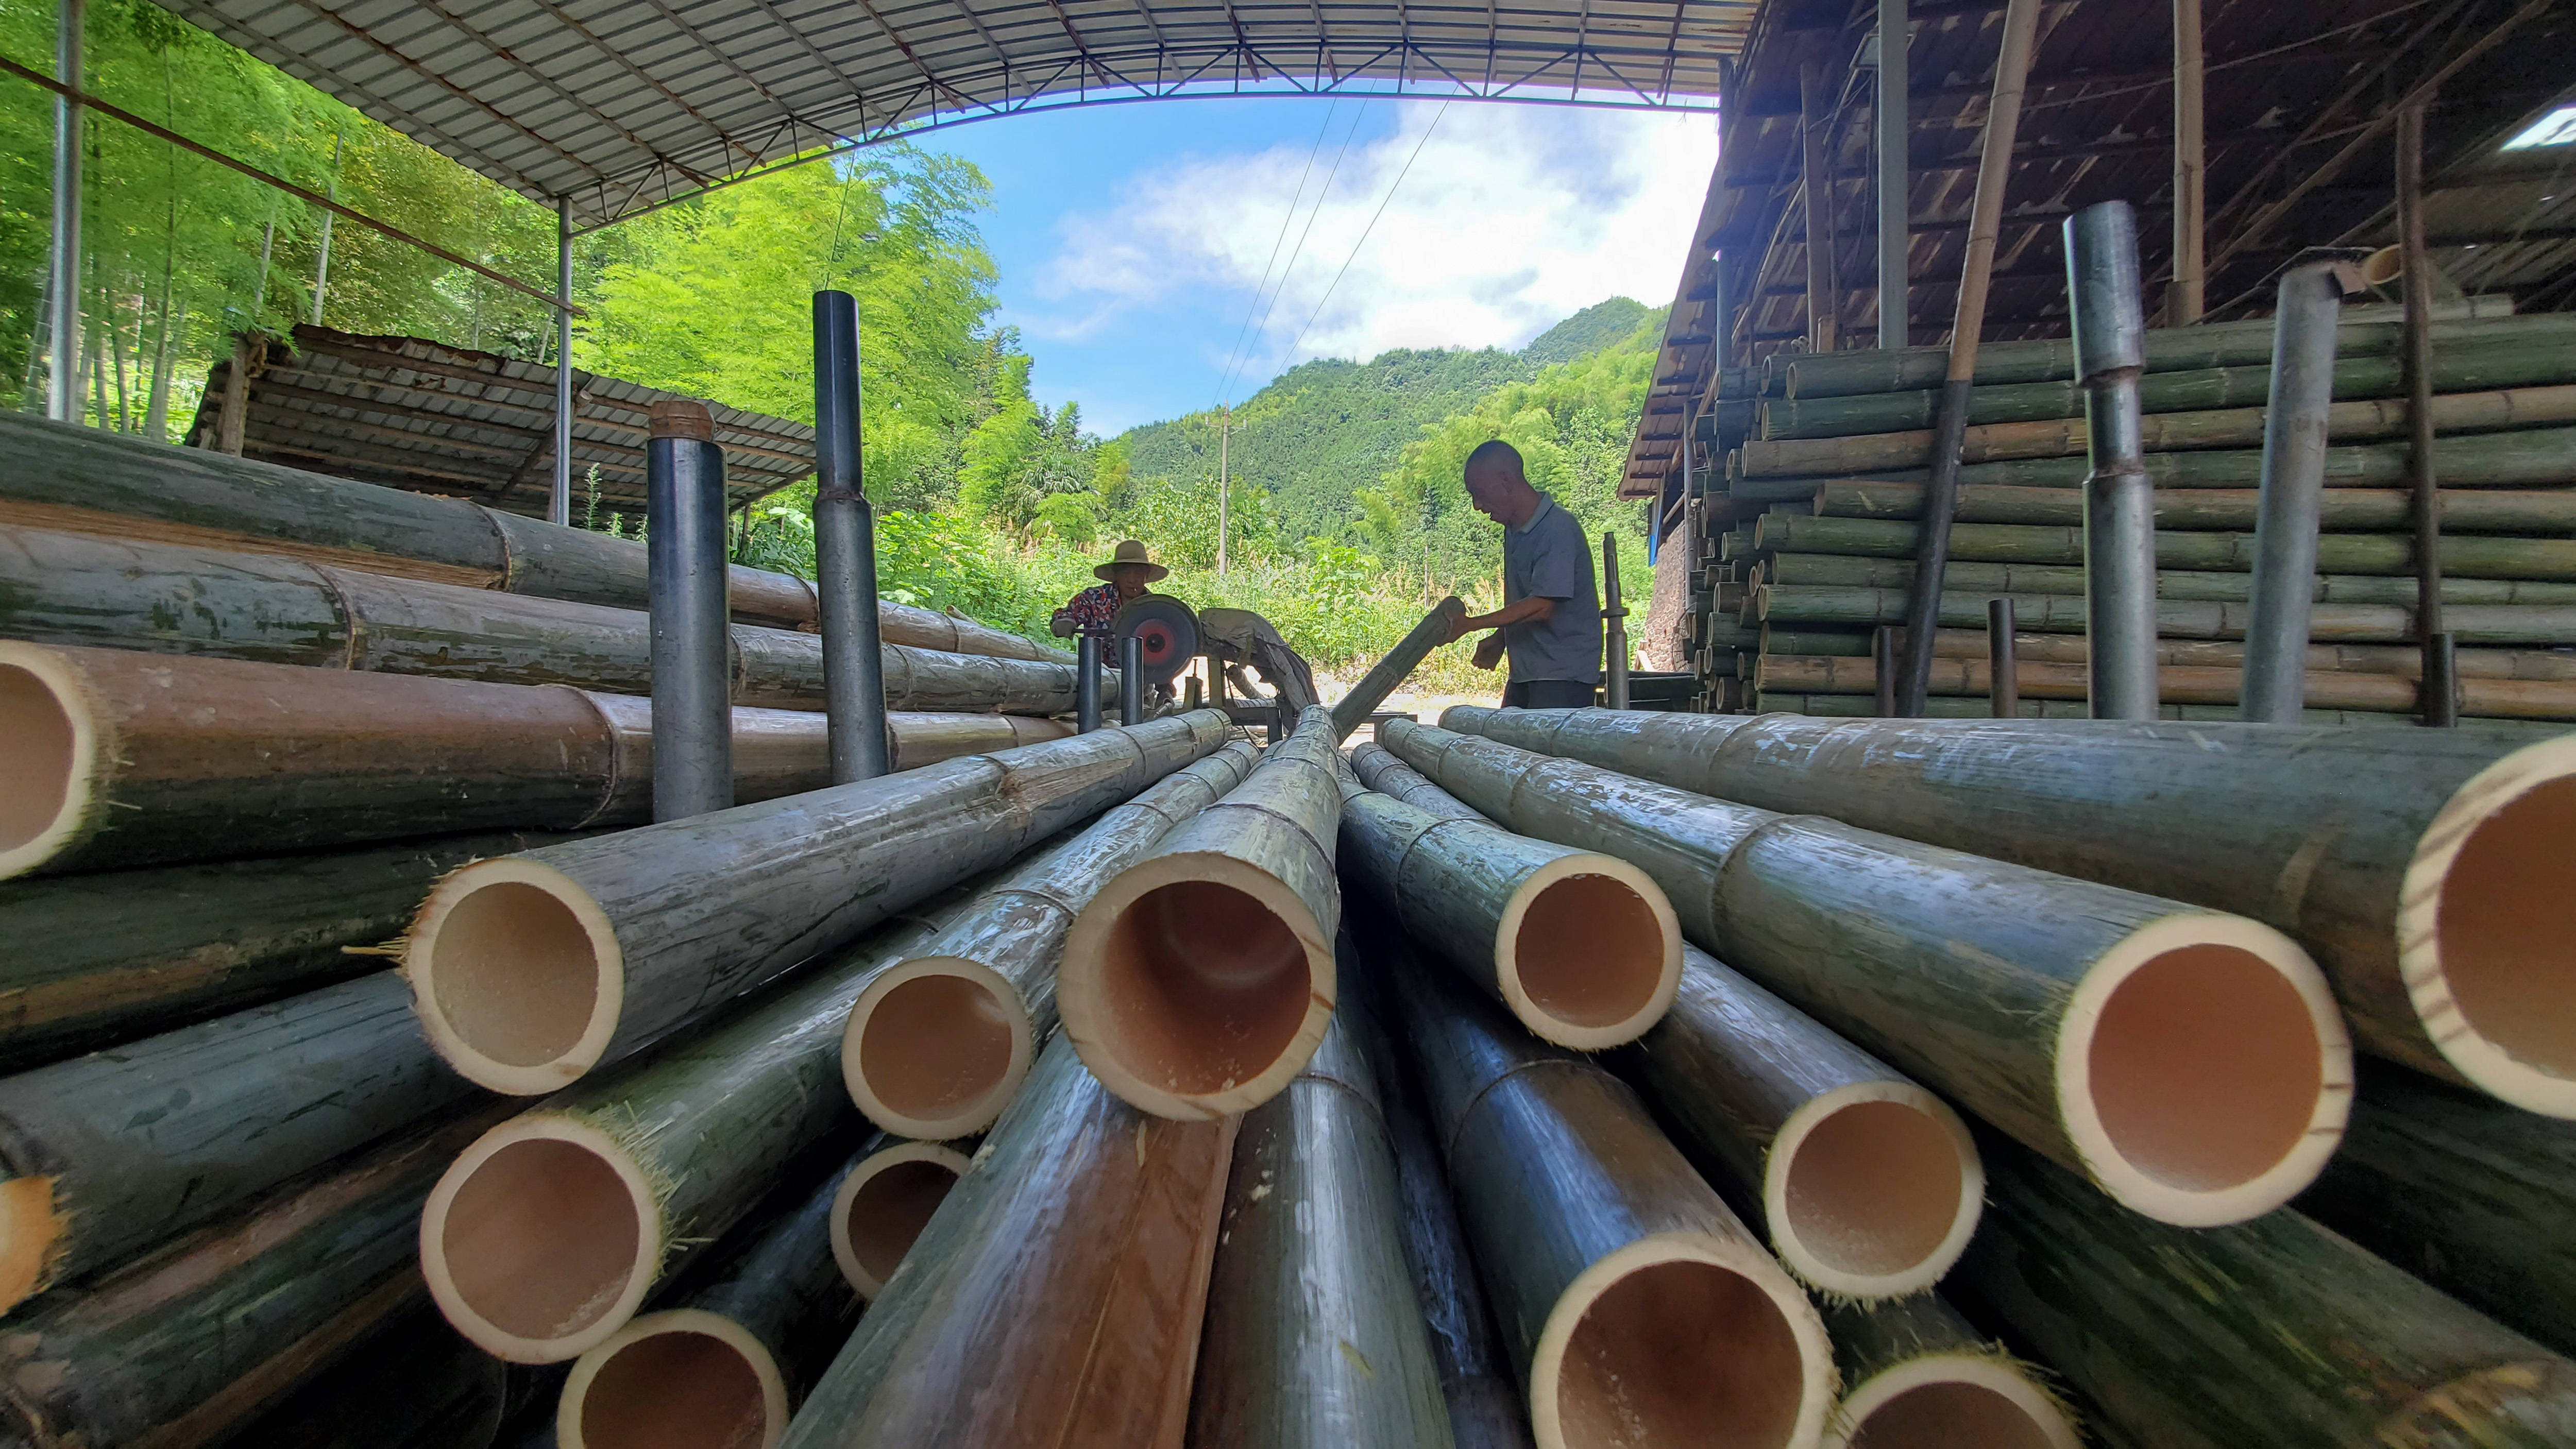 市西岭镇五冲村依托本地丰富的山地资源,大力发展楠竹种植和加工产业